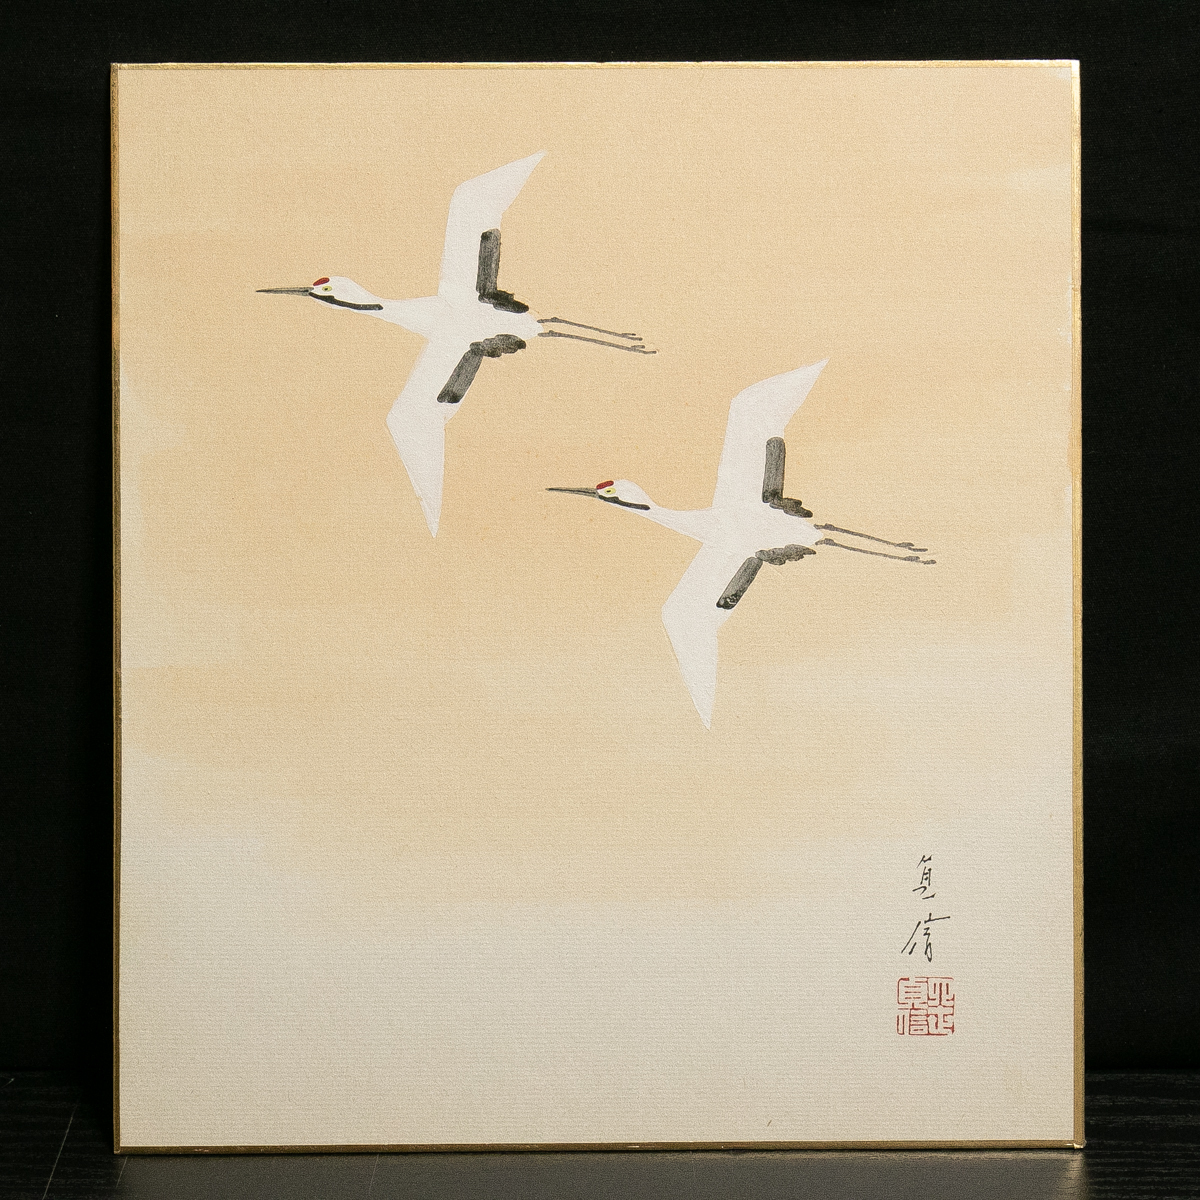 色纸-685 第四代 长谷川定信 双鹤浮世绘画家 [真迹], 绘画, 日本画, 花鸟, 野生动物